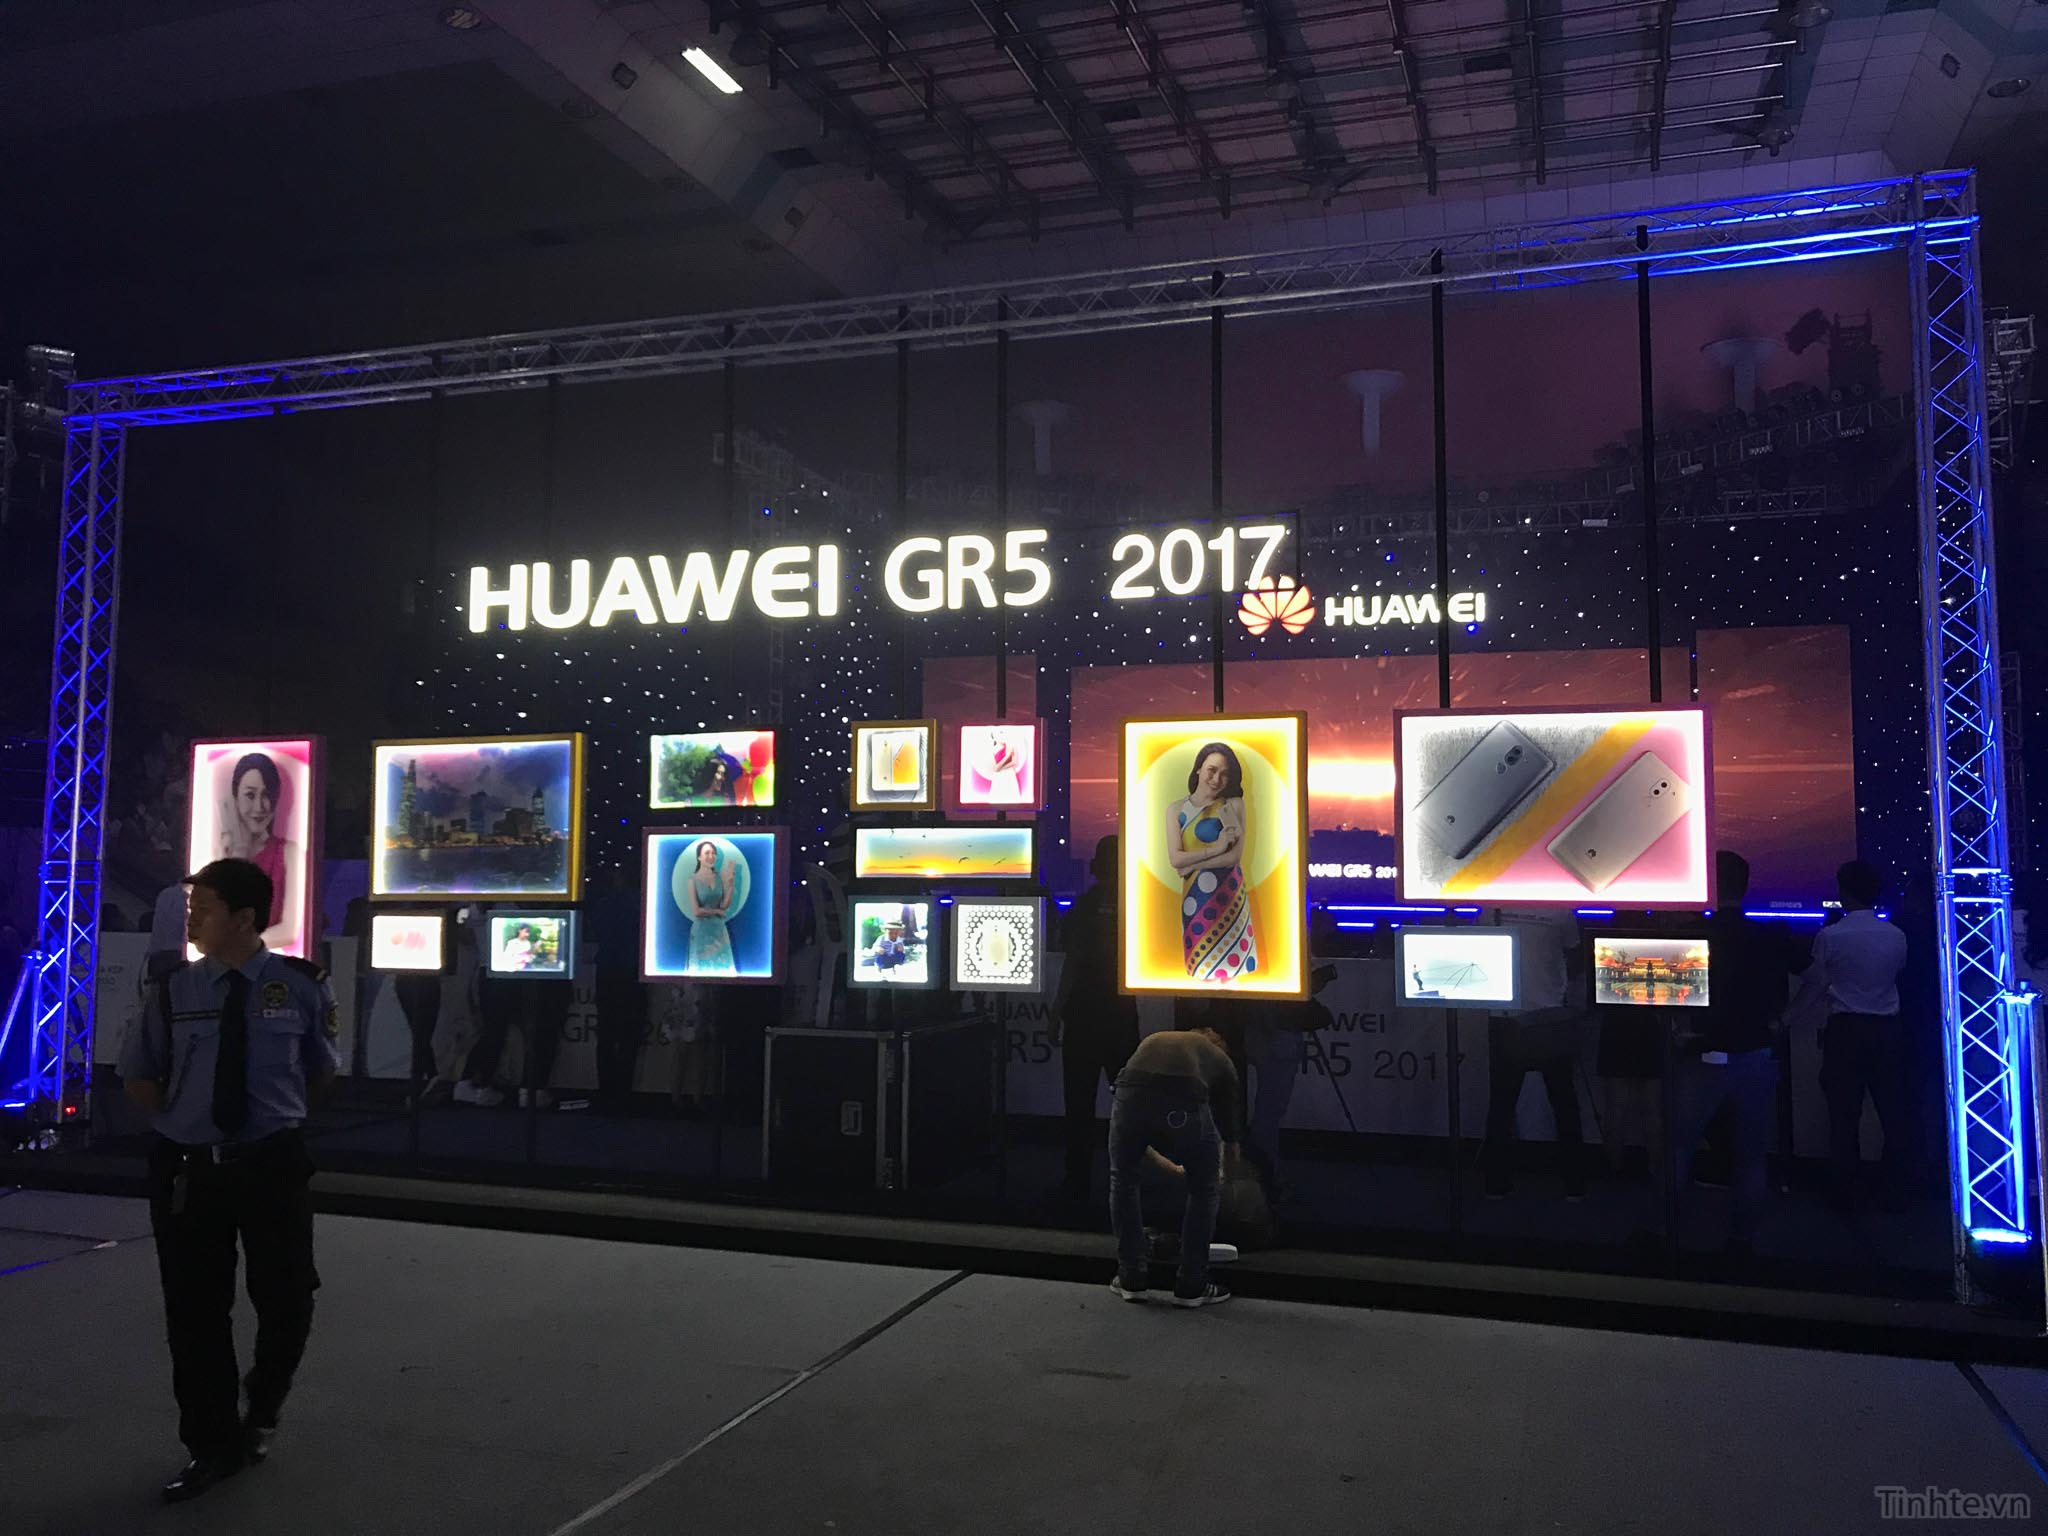 Huawei_GR5_2017_chinh_hang_tinhte.vn-16.jpg